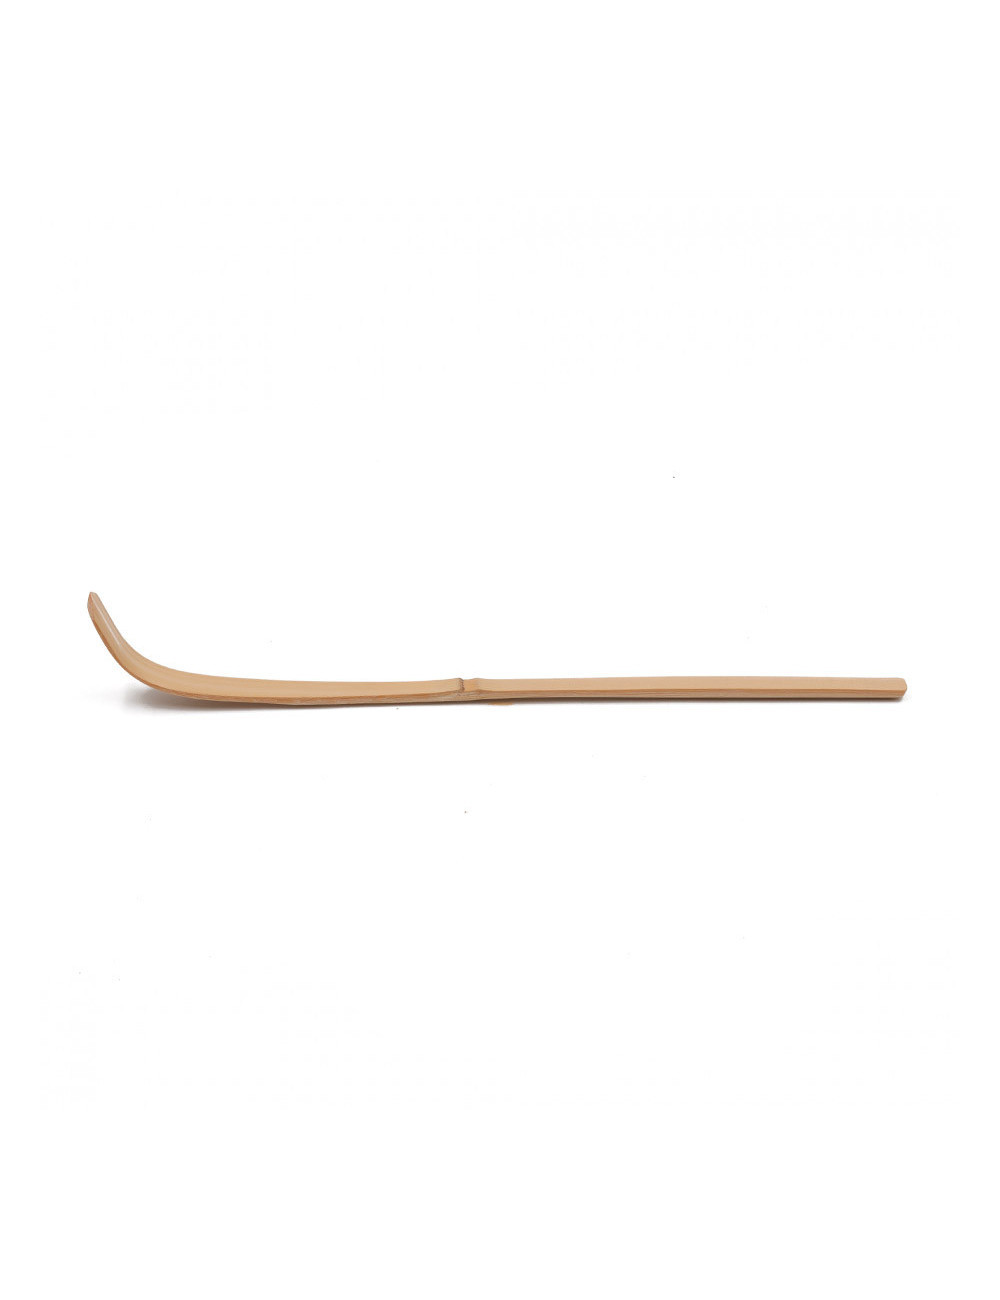 Chashaku cucchiaio dosatè sottile in bamboo chiaro - La Pianta del Tè acquista on line